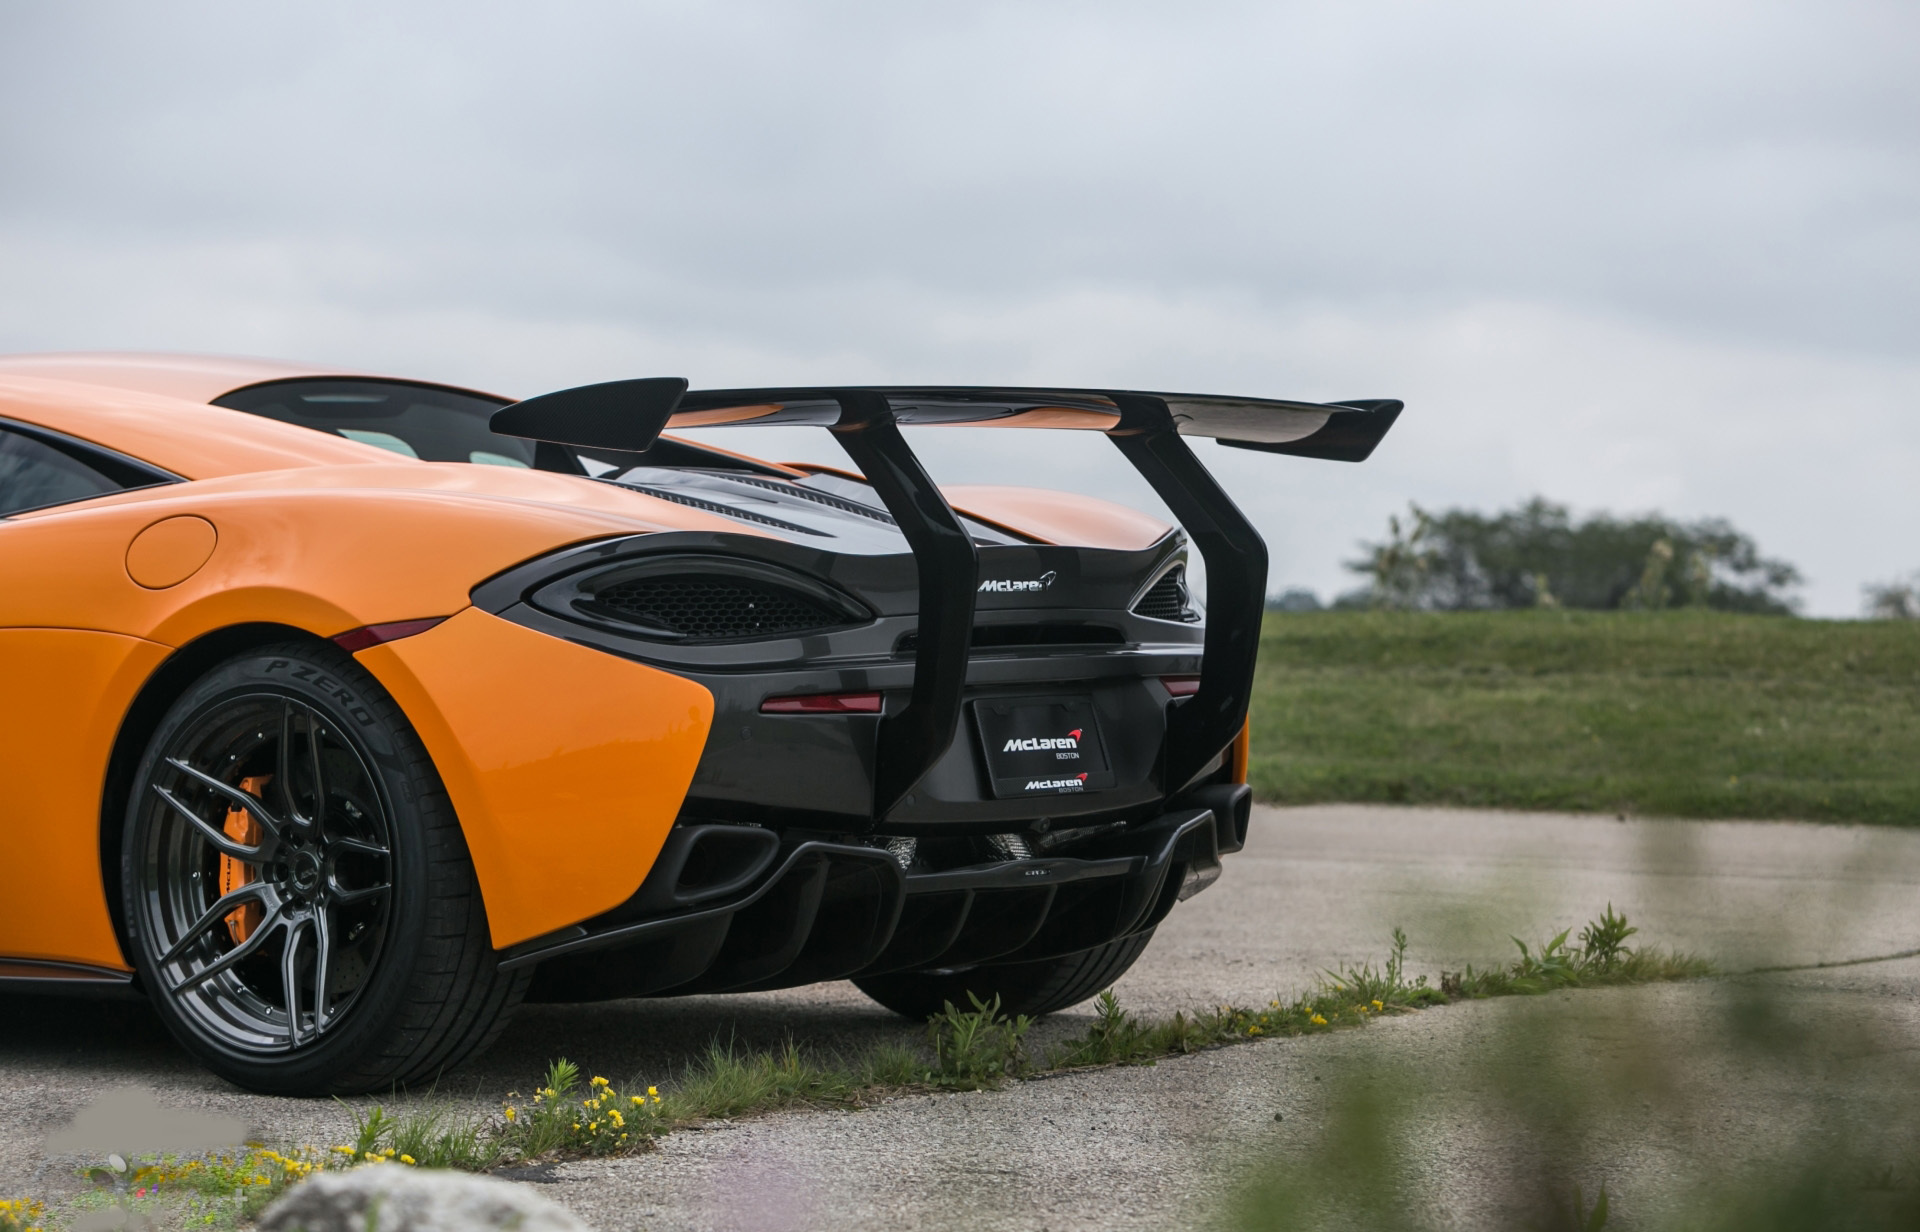 Vorsteiner Nero body kit for McLaren 570S latest model